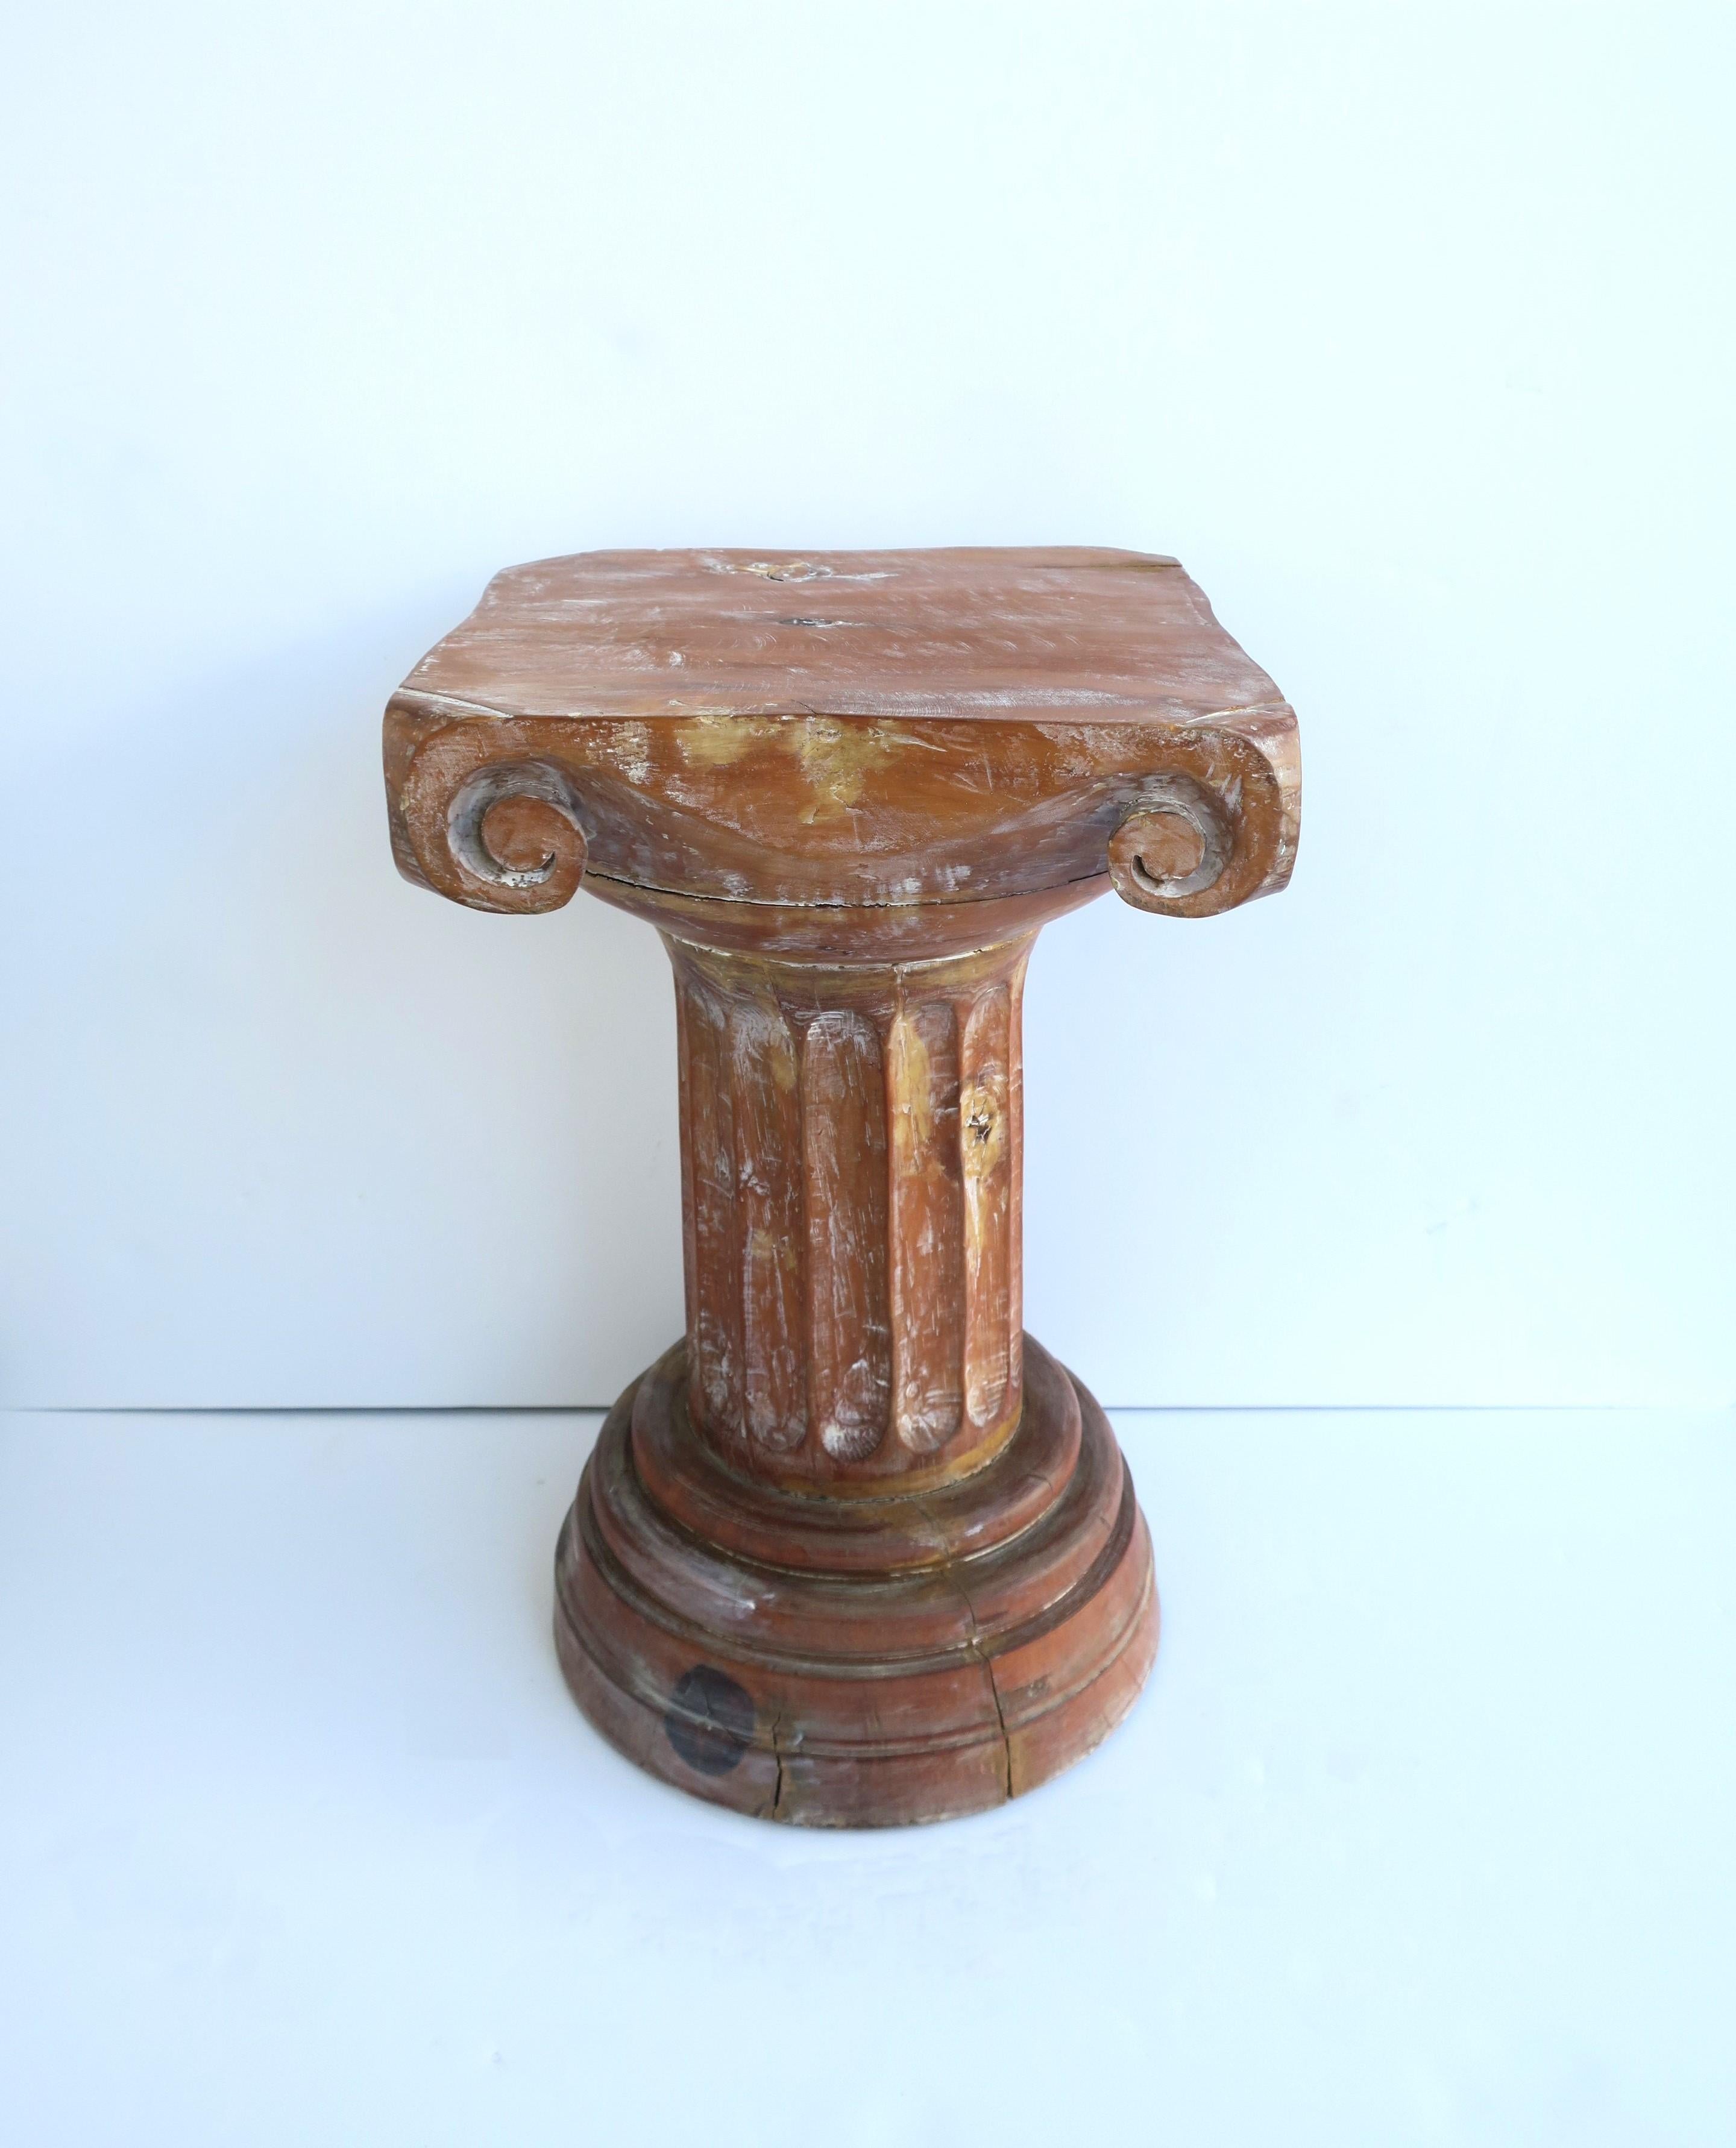 Ionischer Säulensockel aus Holz mit kannelierter Säule und rundem Sockel im neoklassischen griechisch-römischen Stil, um das 20. Die Säule ist massiv, ganz aus Holz, mit geriffelter Säulenmitte und abgestufter runder Basis. Sie eignet sich